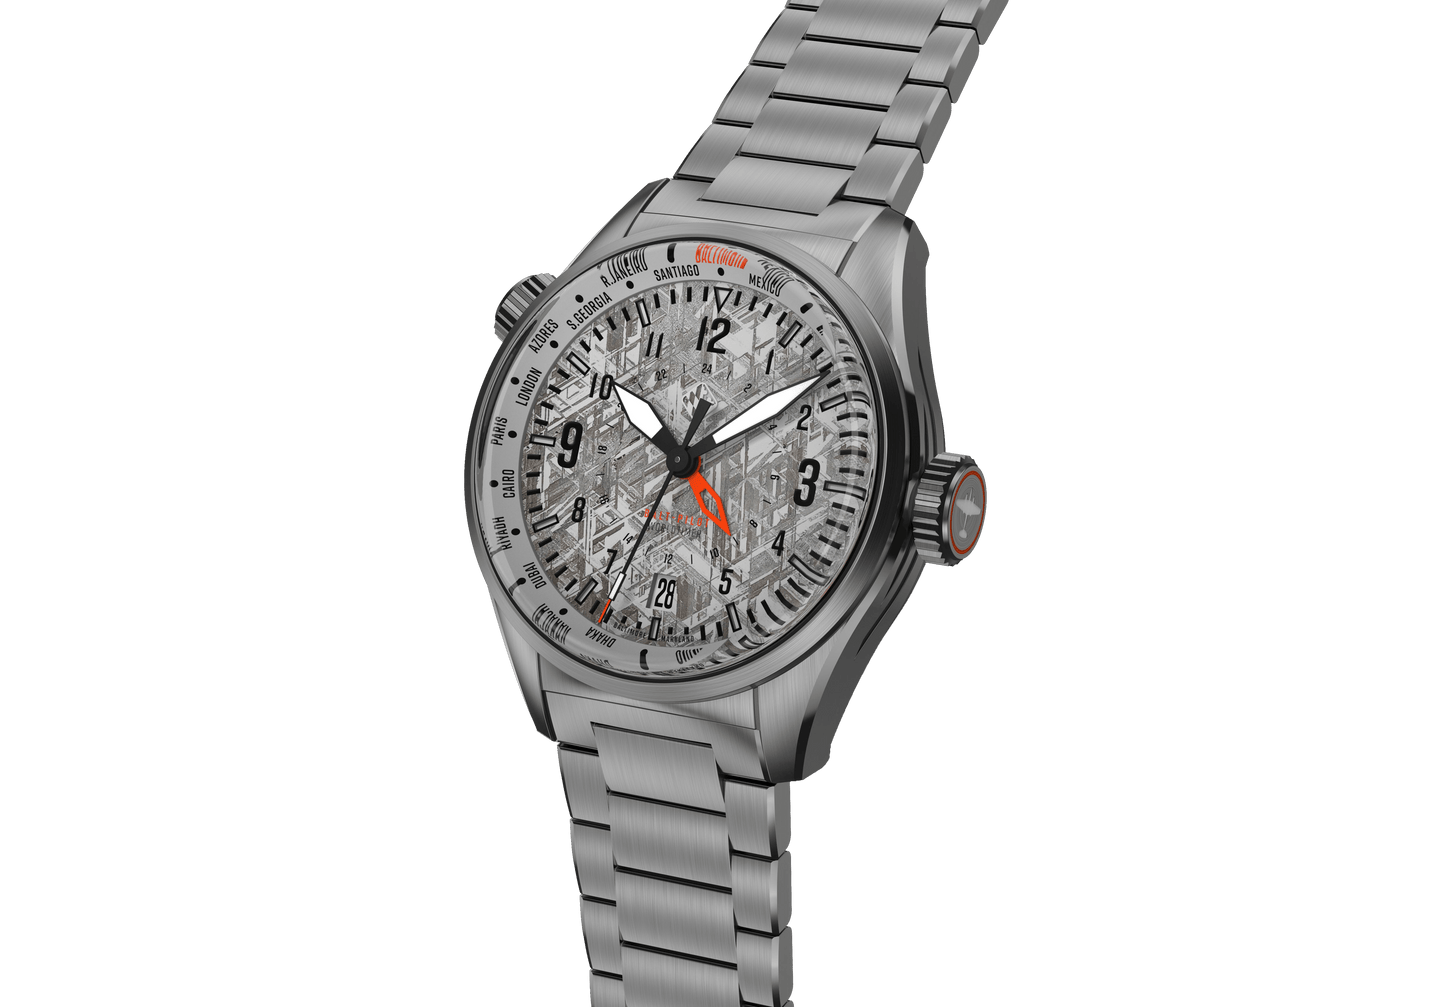 Buy Jaquet Droz Grande Seconde Quantieme Meteorite Mechanical Watch  [J007013270] Online - Best Price Jaquet Droz Grande Seconde Quantieme  Meteorite Mechanical Watch [J007013270] - Justdial Shop Online.